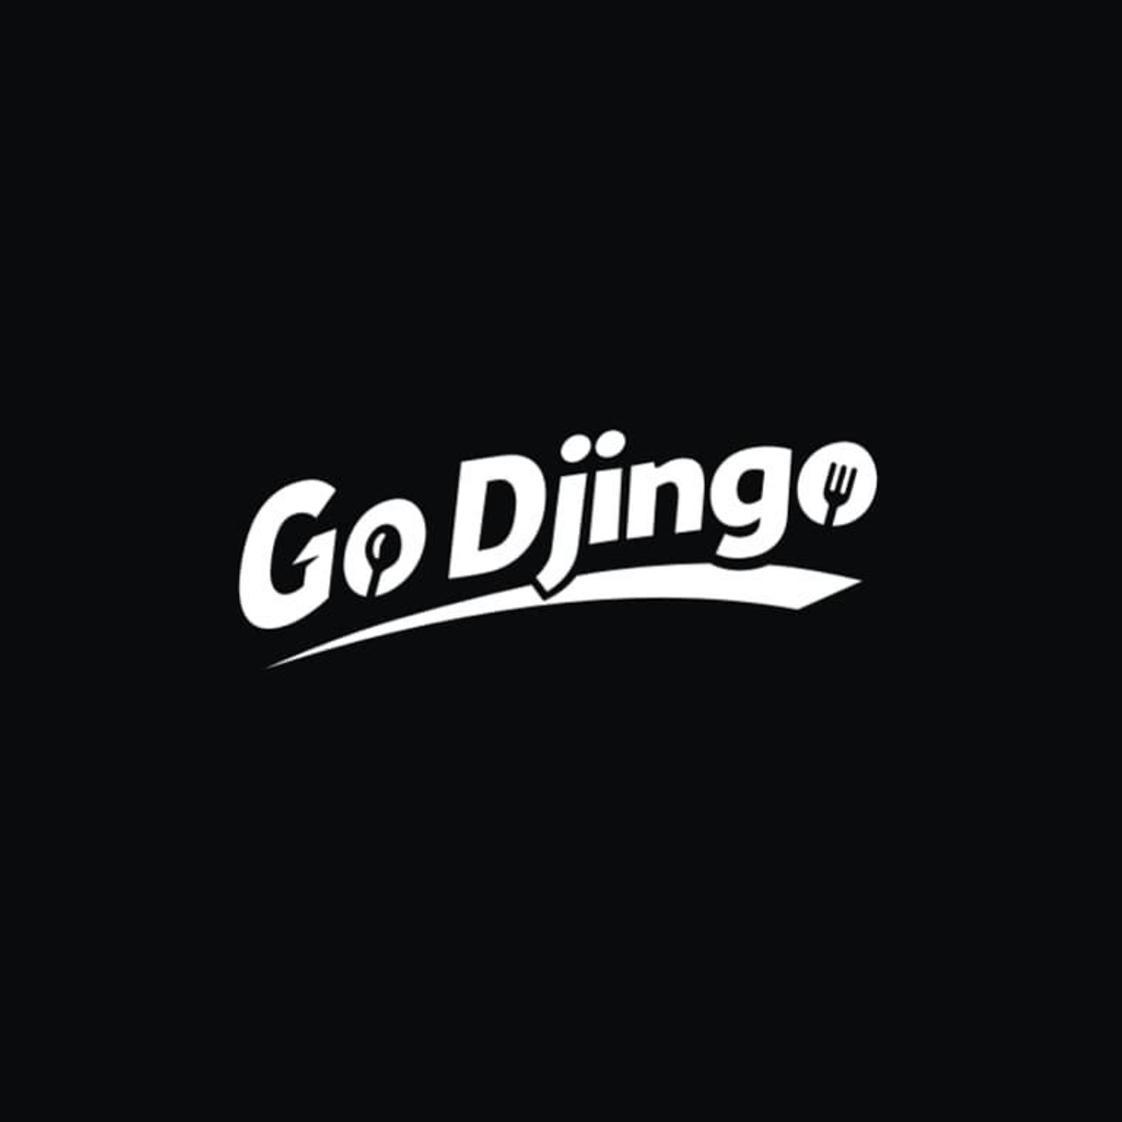 GO DJINGO